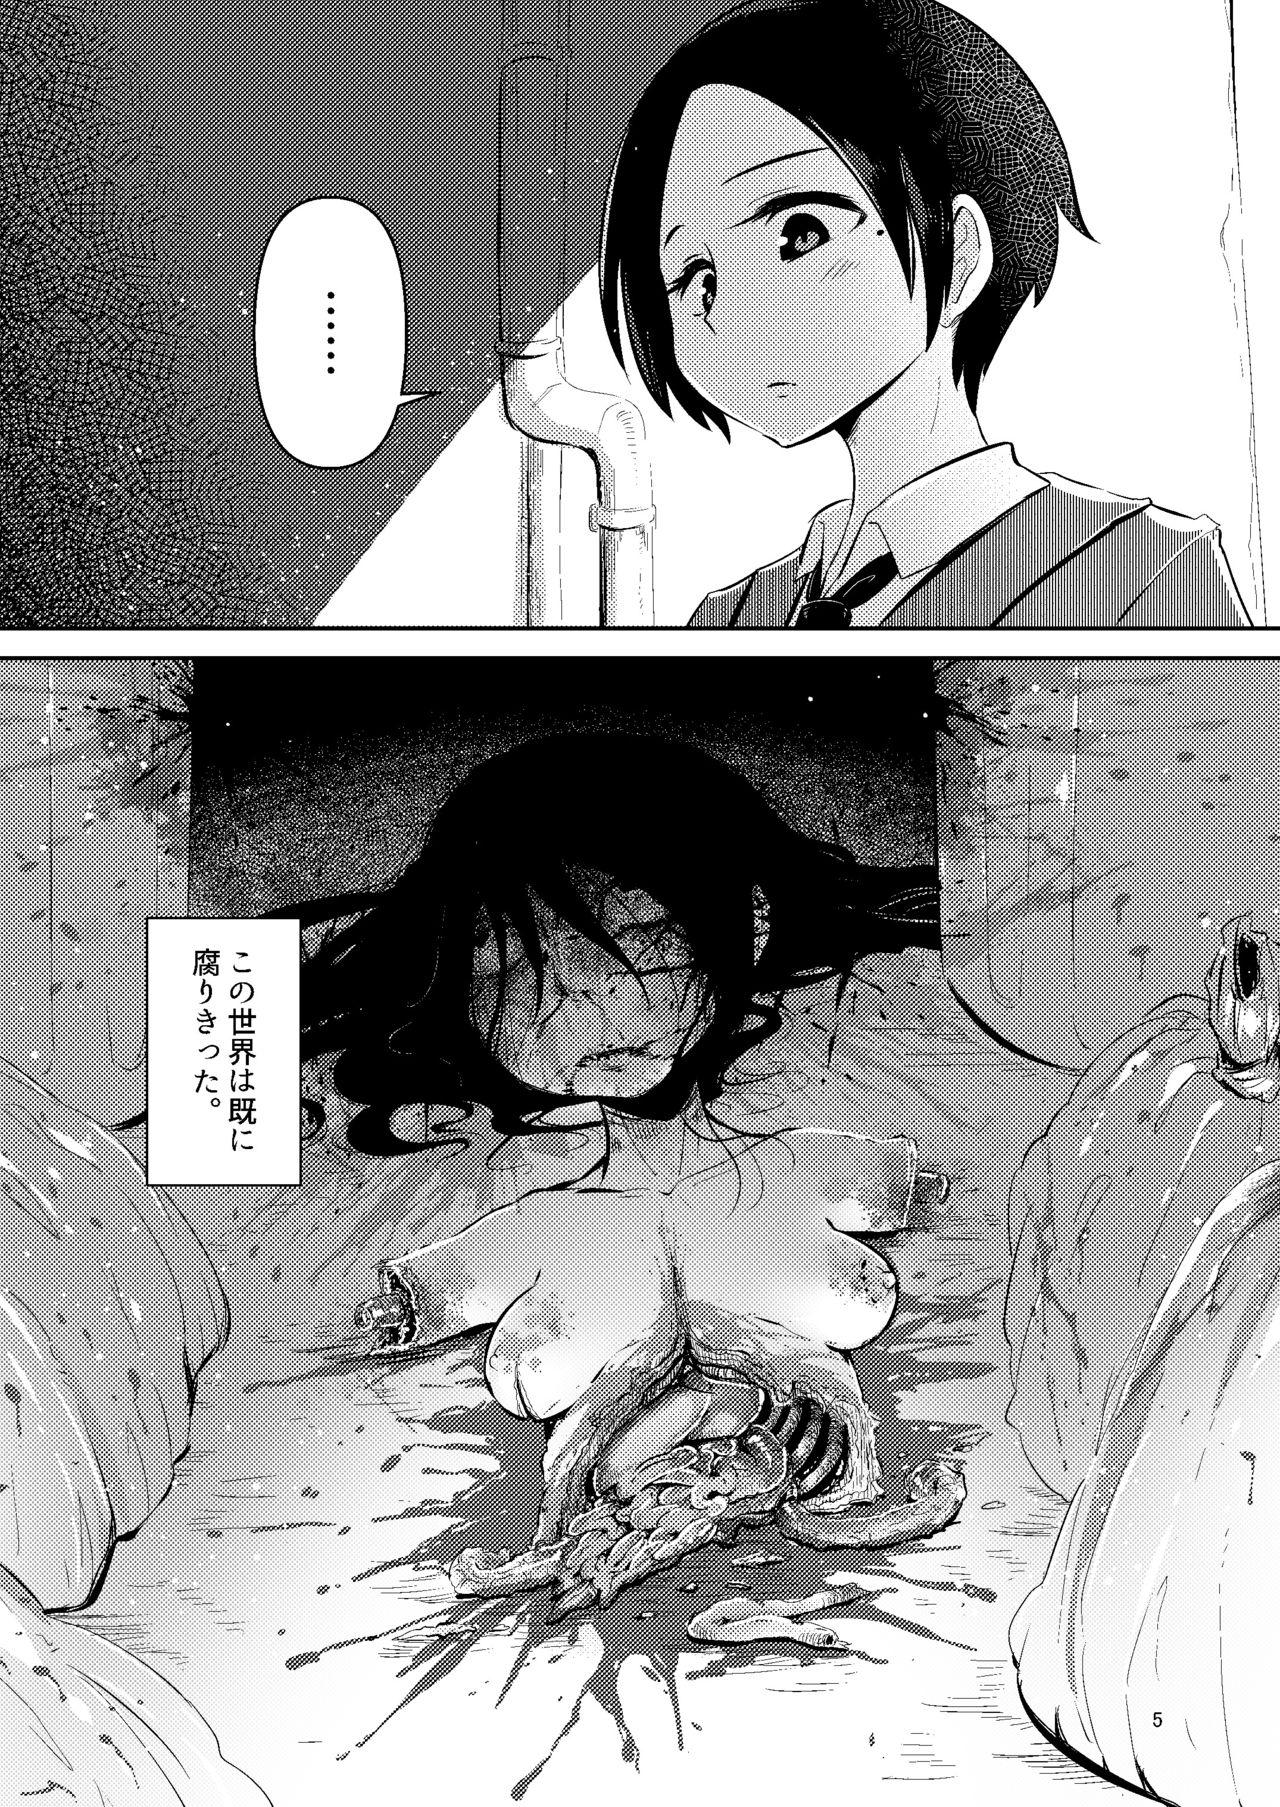 Deepthroat NakiTsuraBachi LasNo - Original Tinder - Page 4